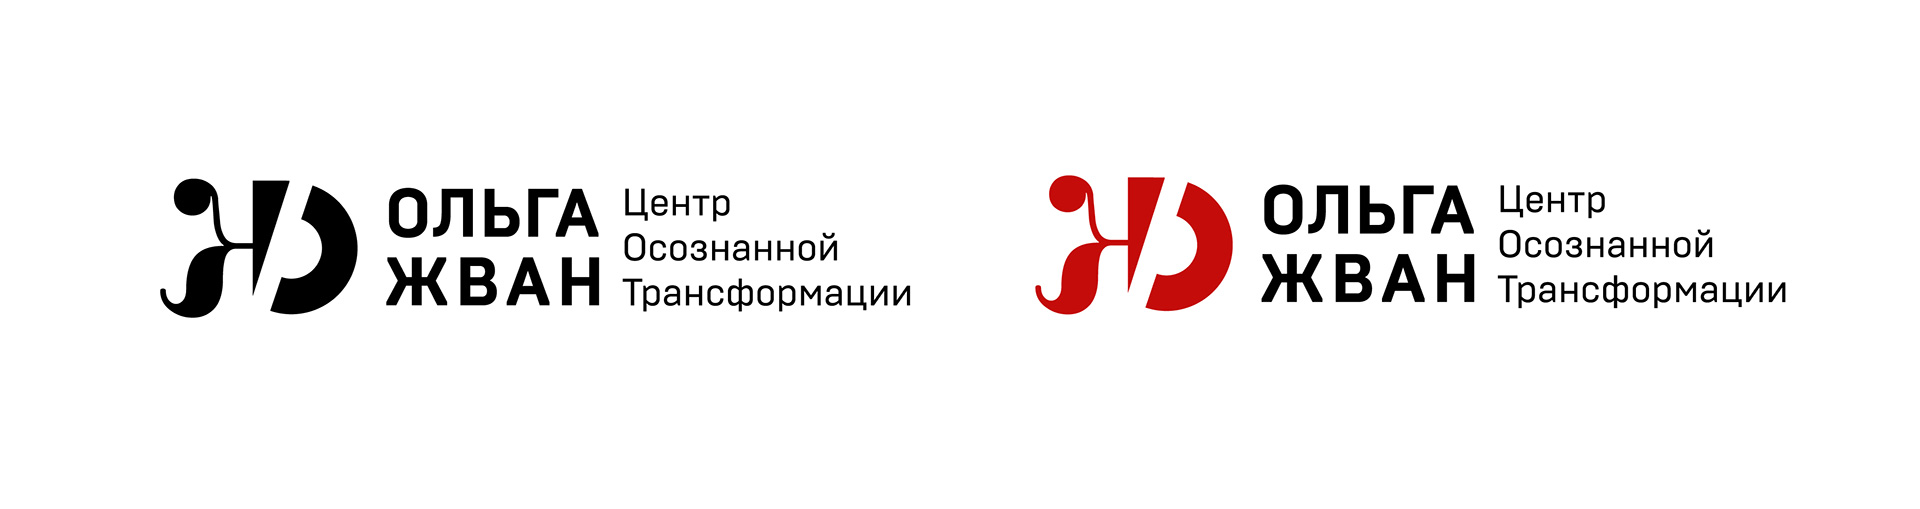 Разработка логотипа для Центра осознанной трансформации